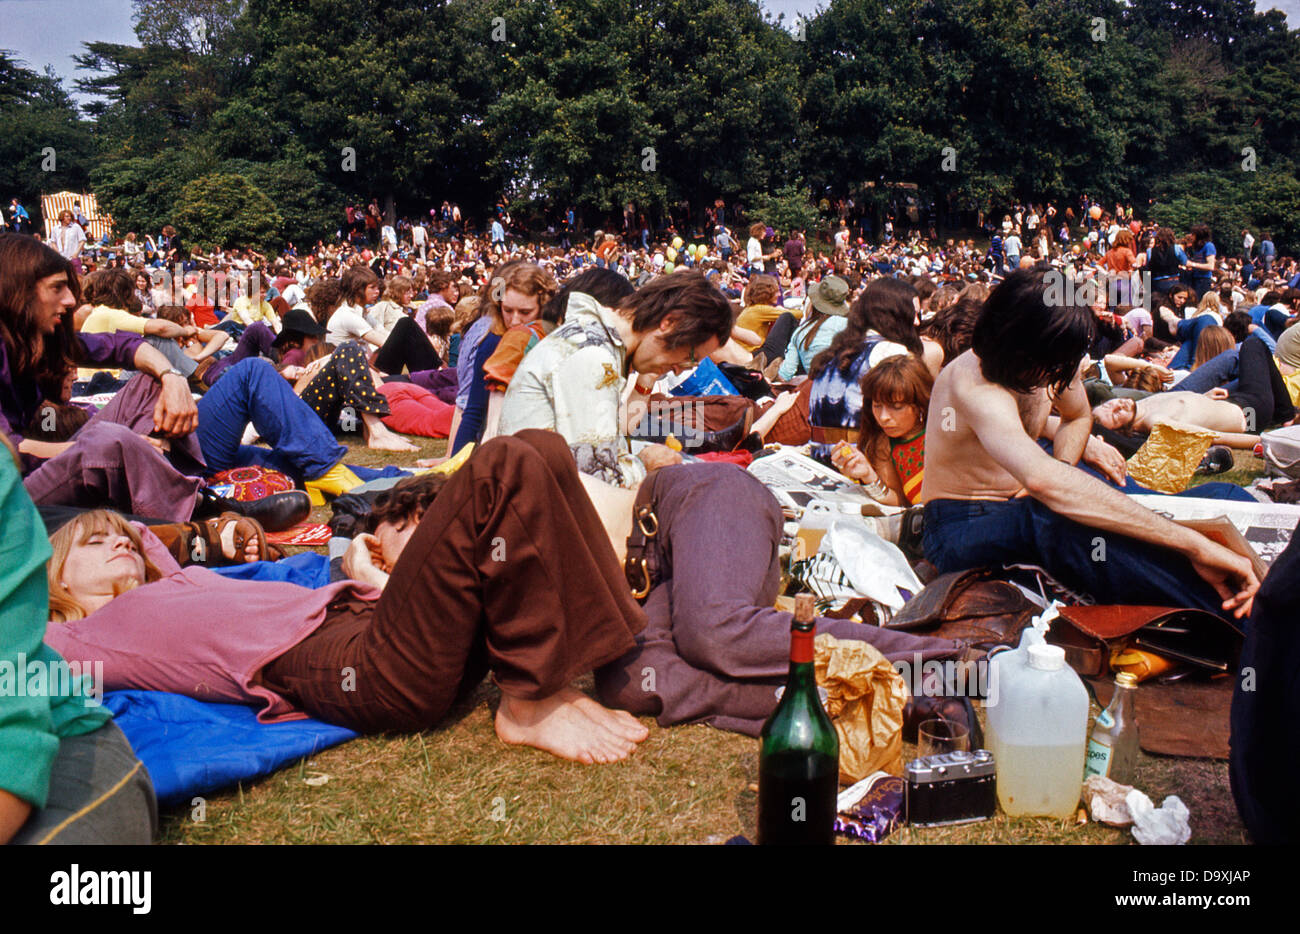 Foto di archivio di settanta anni settanta la folla di giovani appassionati di relax al Roxy Music Garden Party Festival Musicale Estivo in concerto al Crystal Palace di Londra Sud Inghilterra UK 1972 KATHY DEWITT Foto Stock